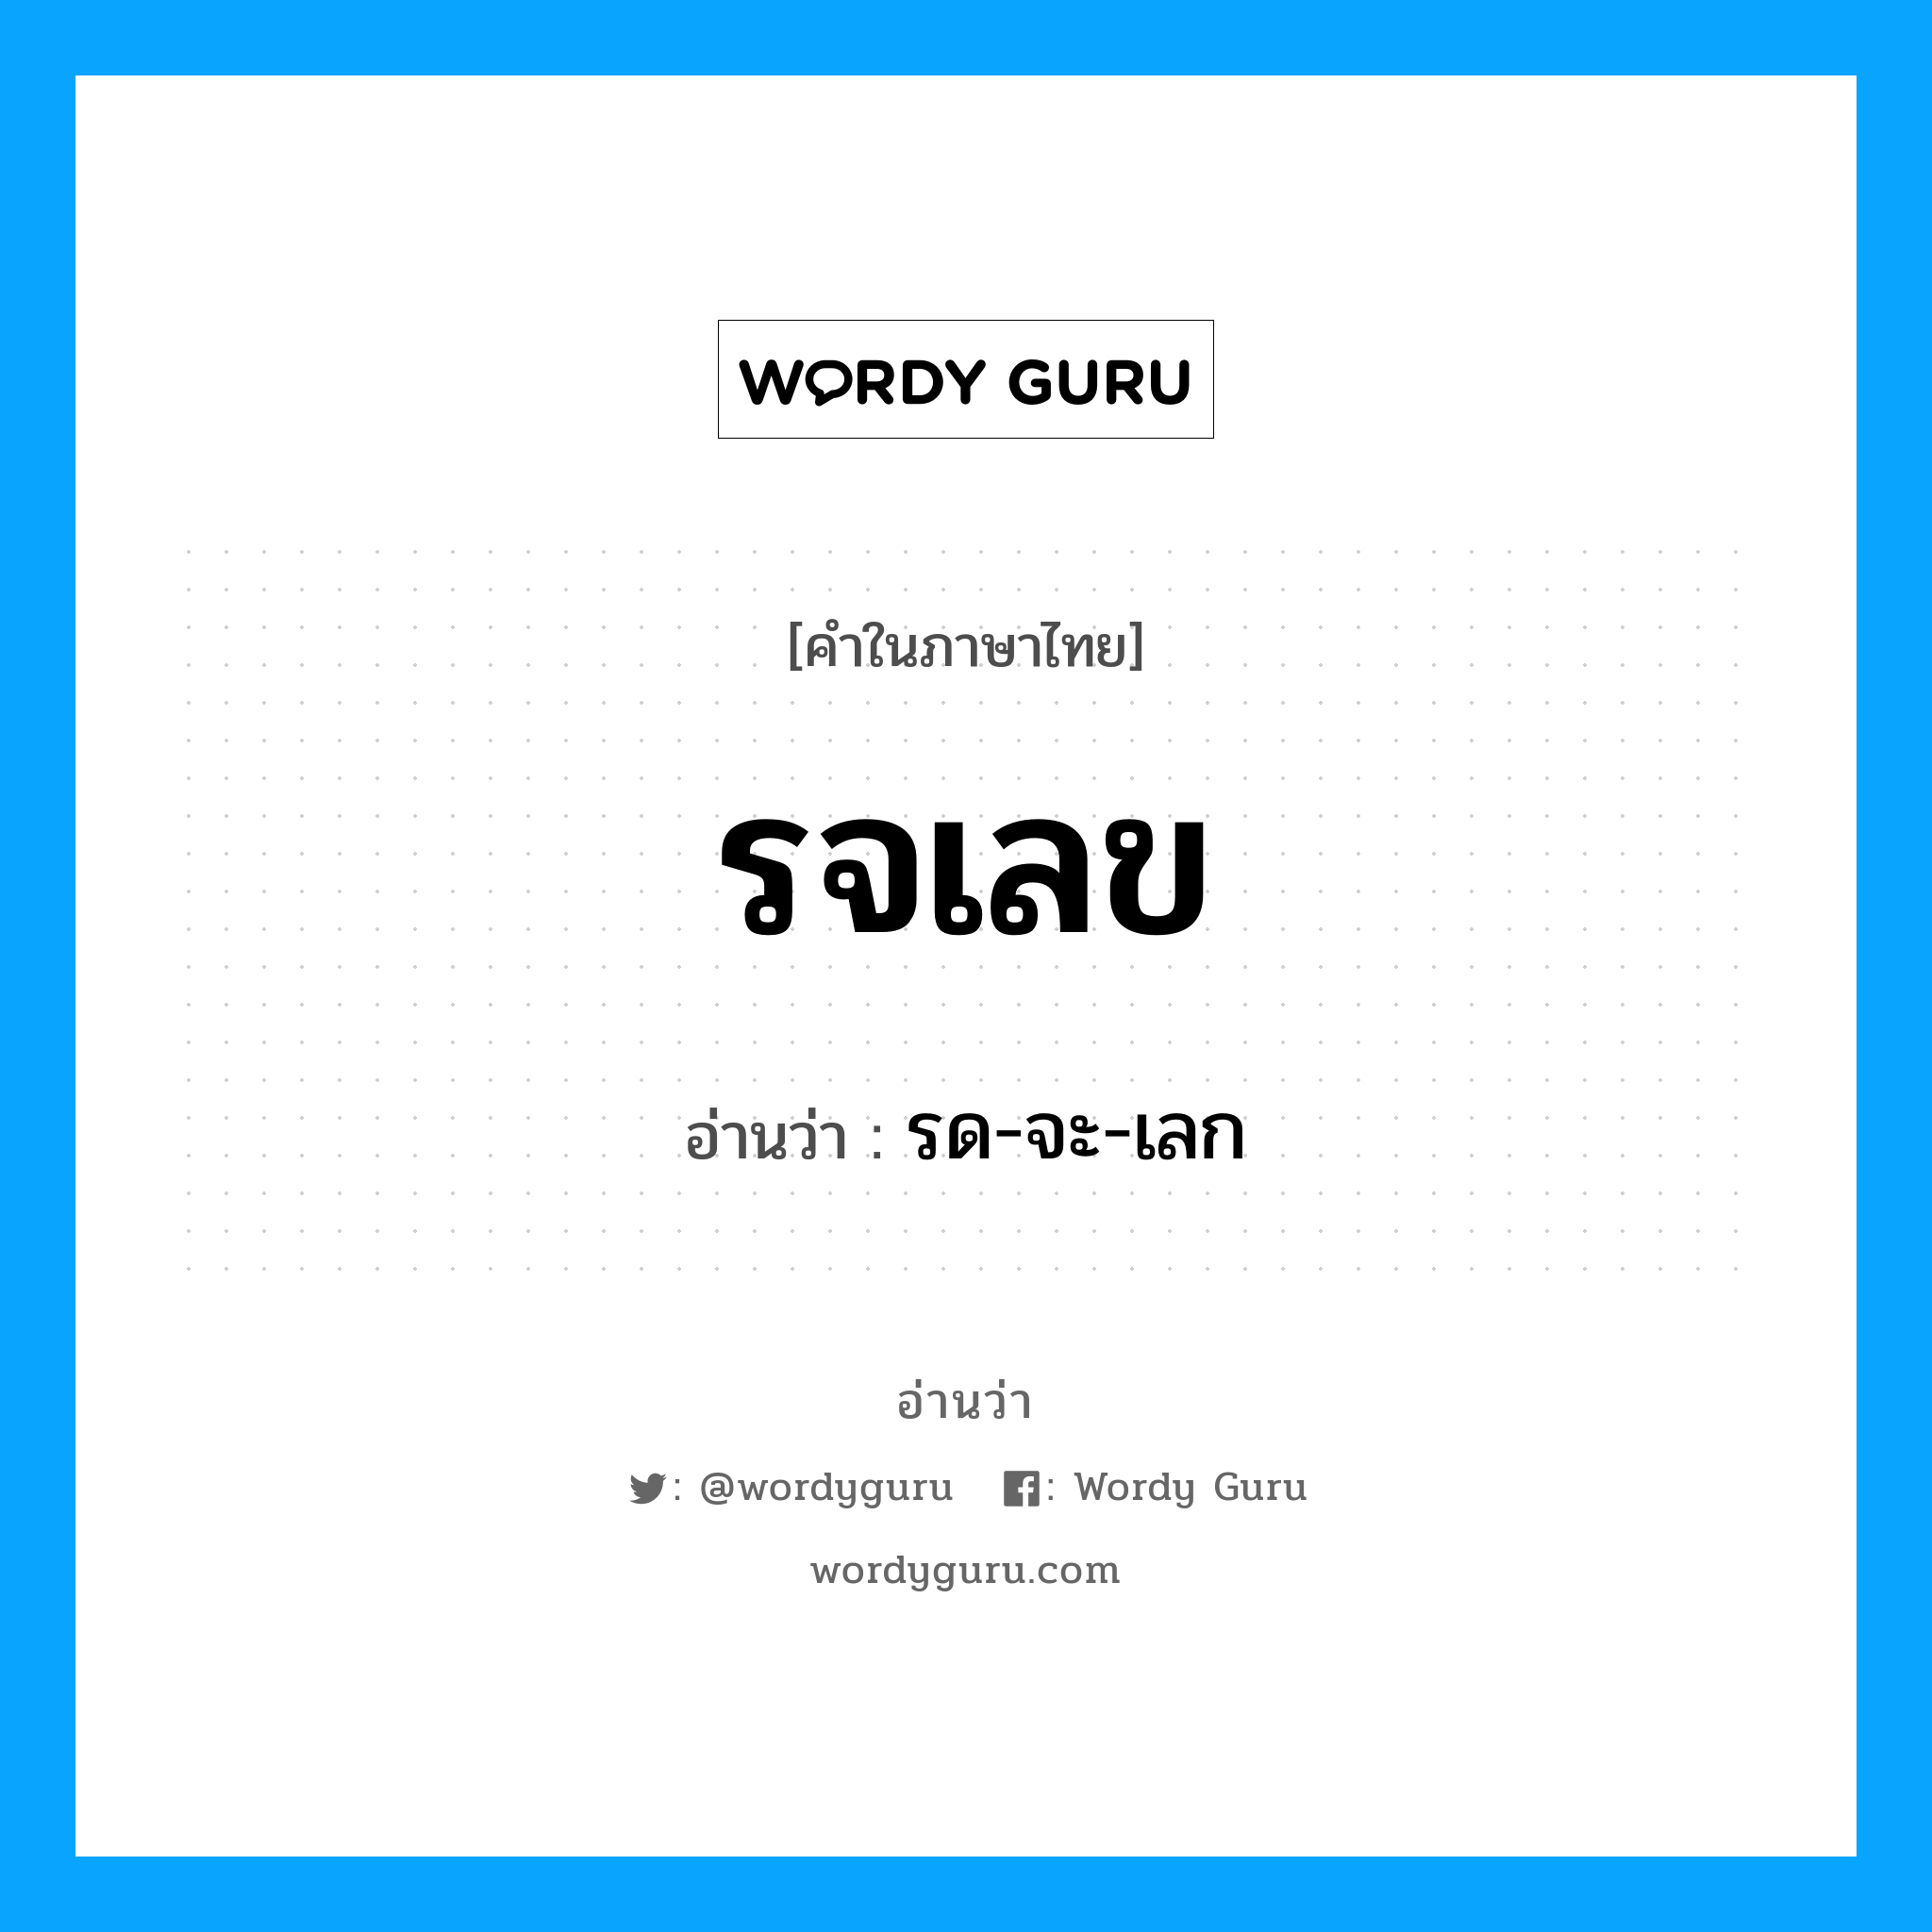 รด-จะ-เลก เป็นคำอ่านของคำไหน?, คำในภาษาไทย รด-จะ-เลก อ่านว่า รจเลข